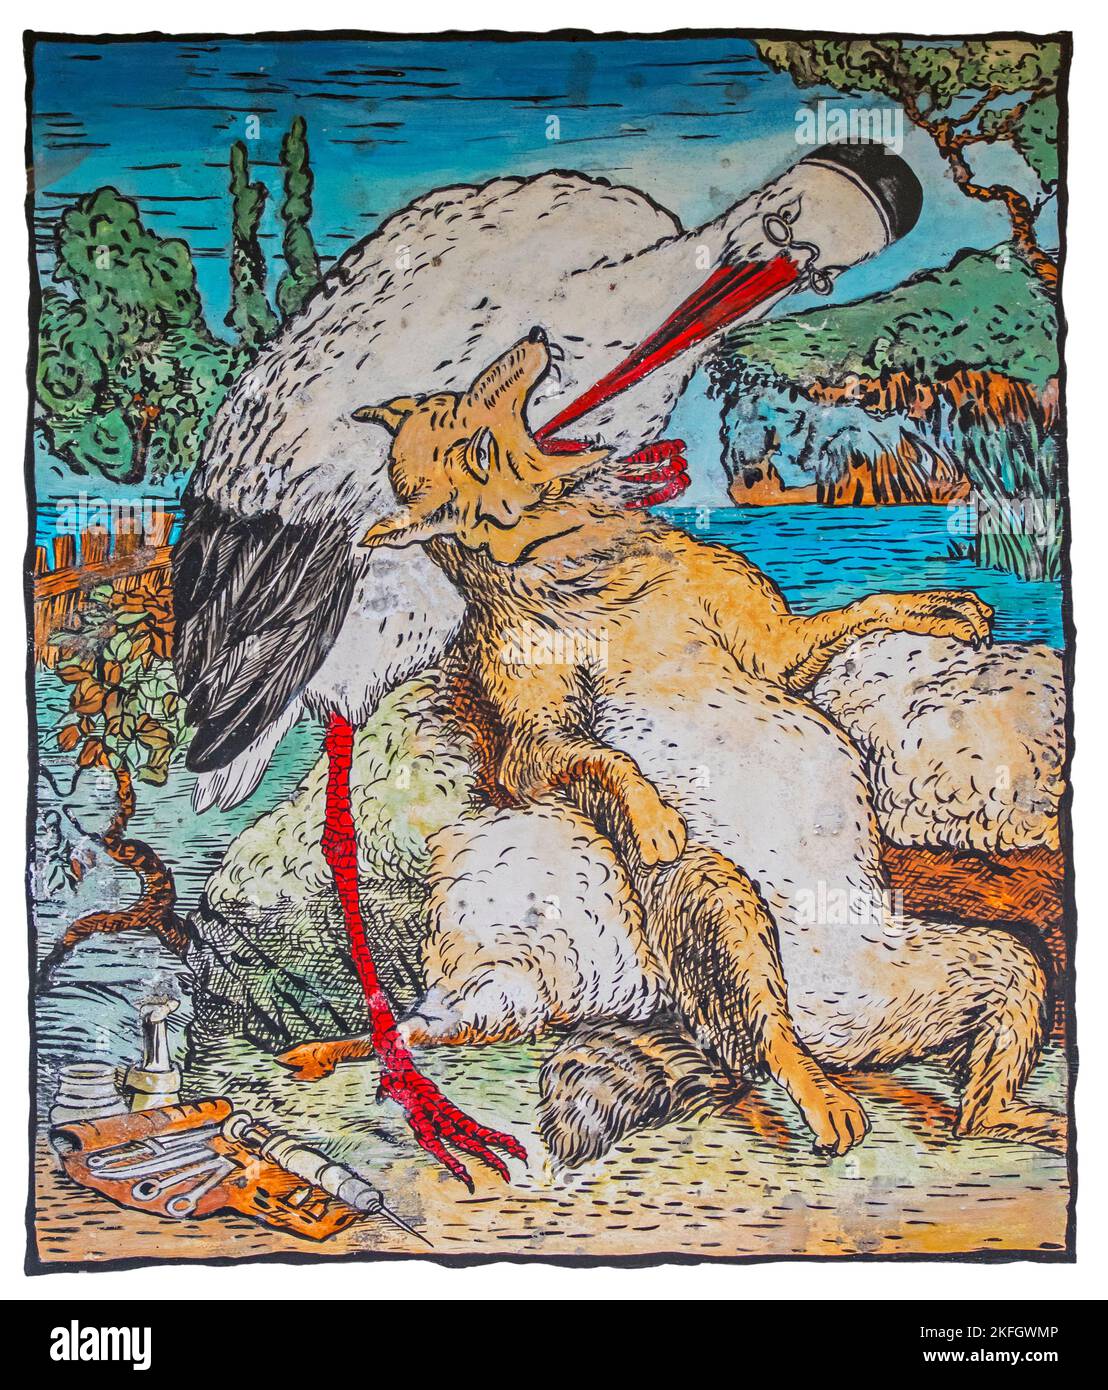 Le Loup et la Cigogne / El lobo y la grúa, ilustración del ilustrador francés Grandville en el libro Fables del fabulista Jean de La Fontaine Foto de stock